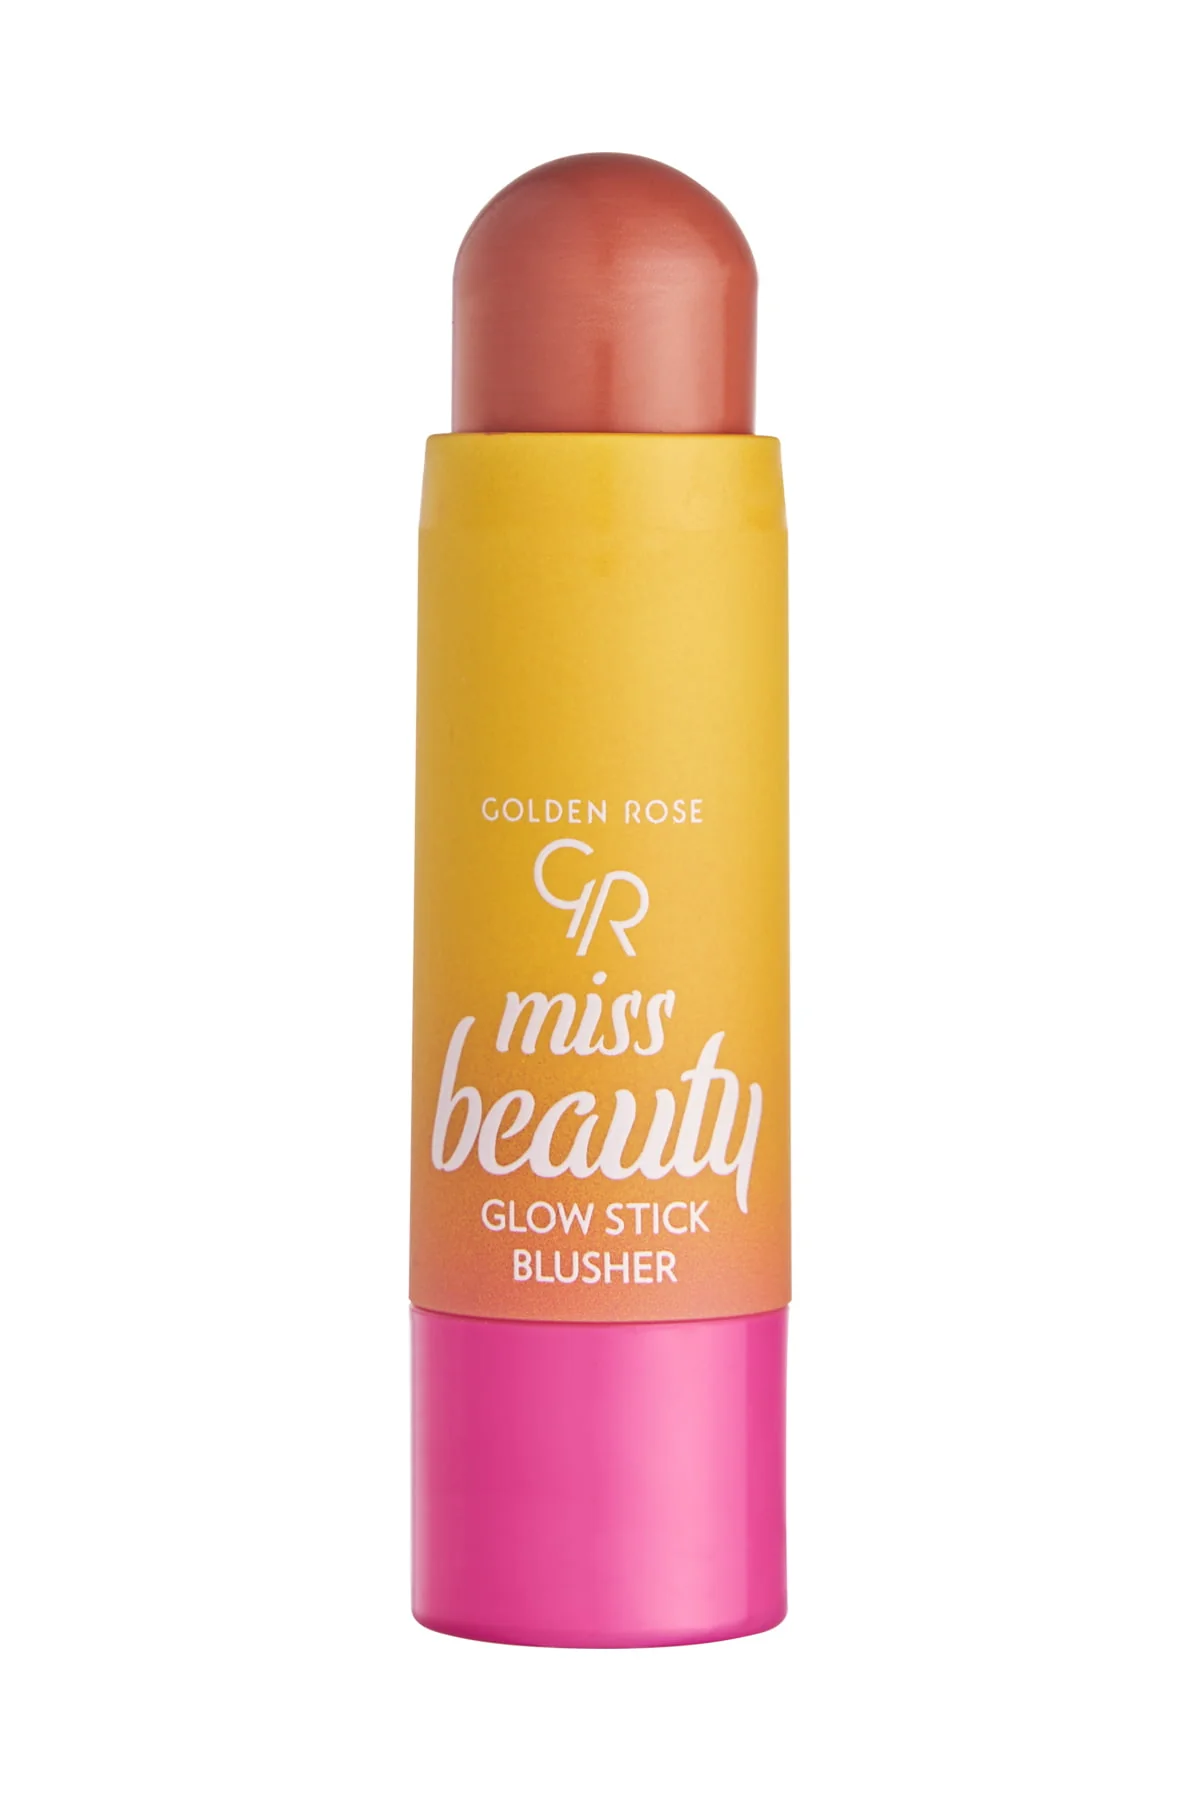 Golden Rose Miss Beauty Glow Stick Blusher Allık 01 Peachy Flash